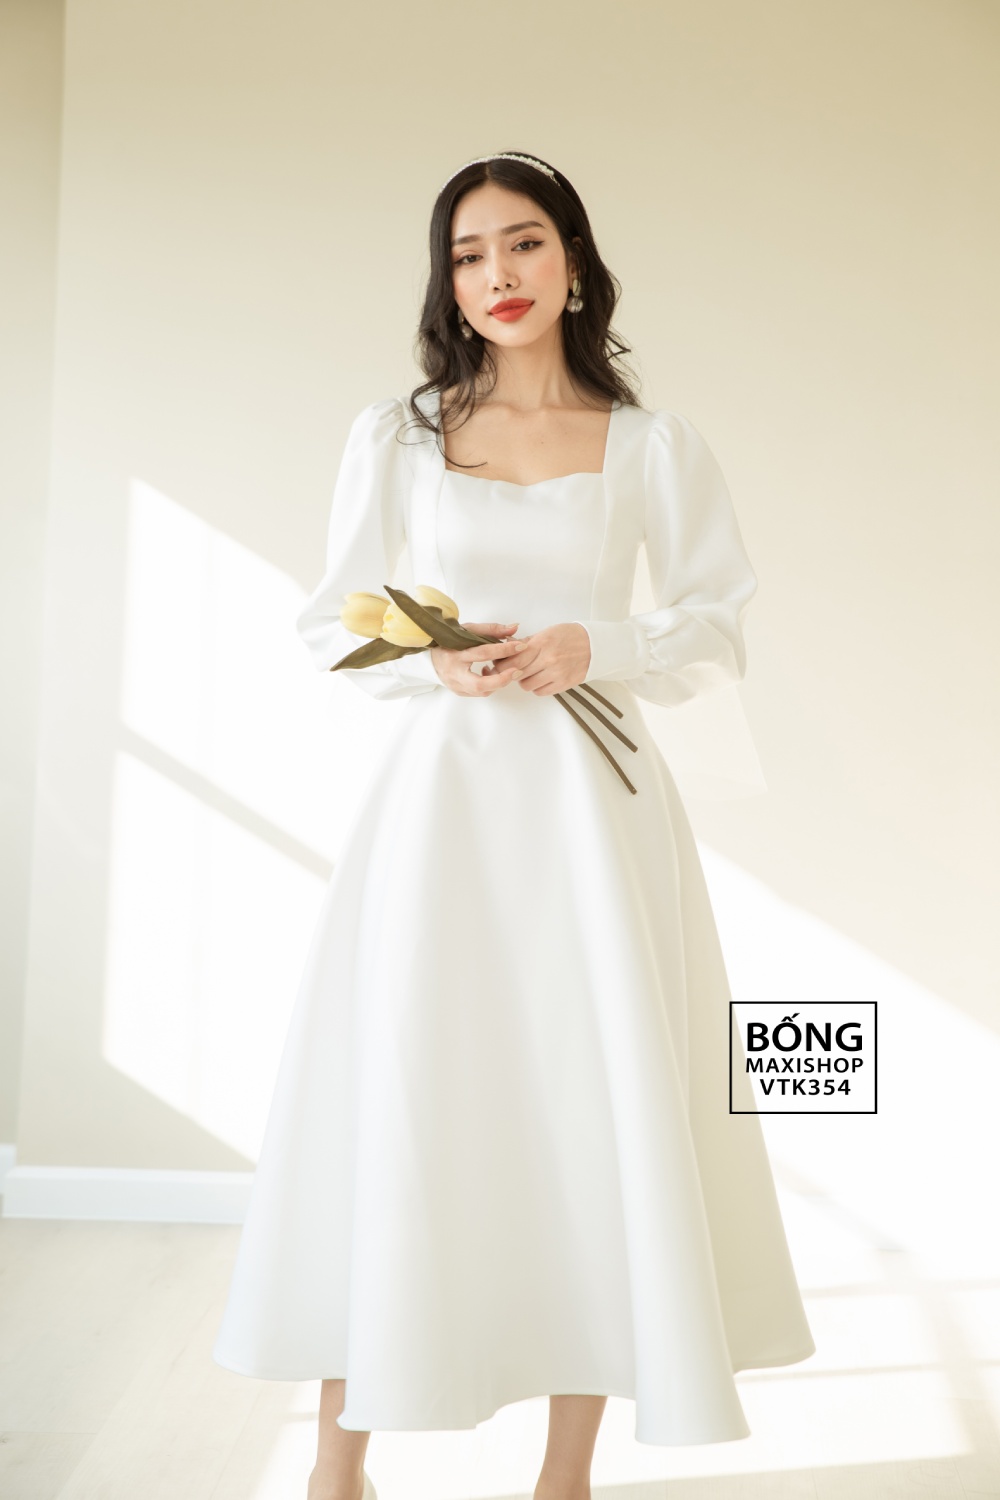 Mua Váy đầm xòe dự tiệc công chúa màu trắng thanh lịch duyên dáng có  bigsize mẫu mới giá rẻ đẹp - Trắng - L tại THỜI TRANG TINA | Tiki